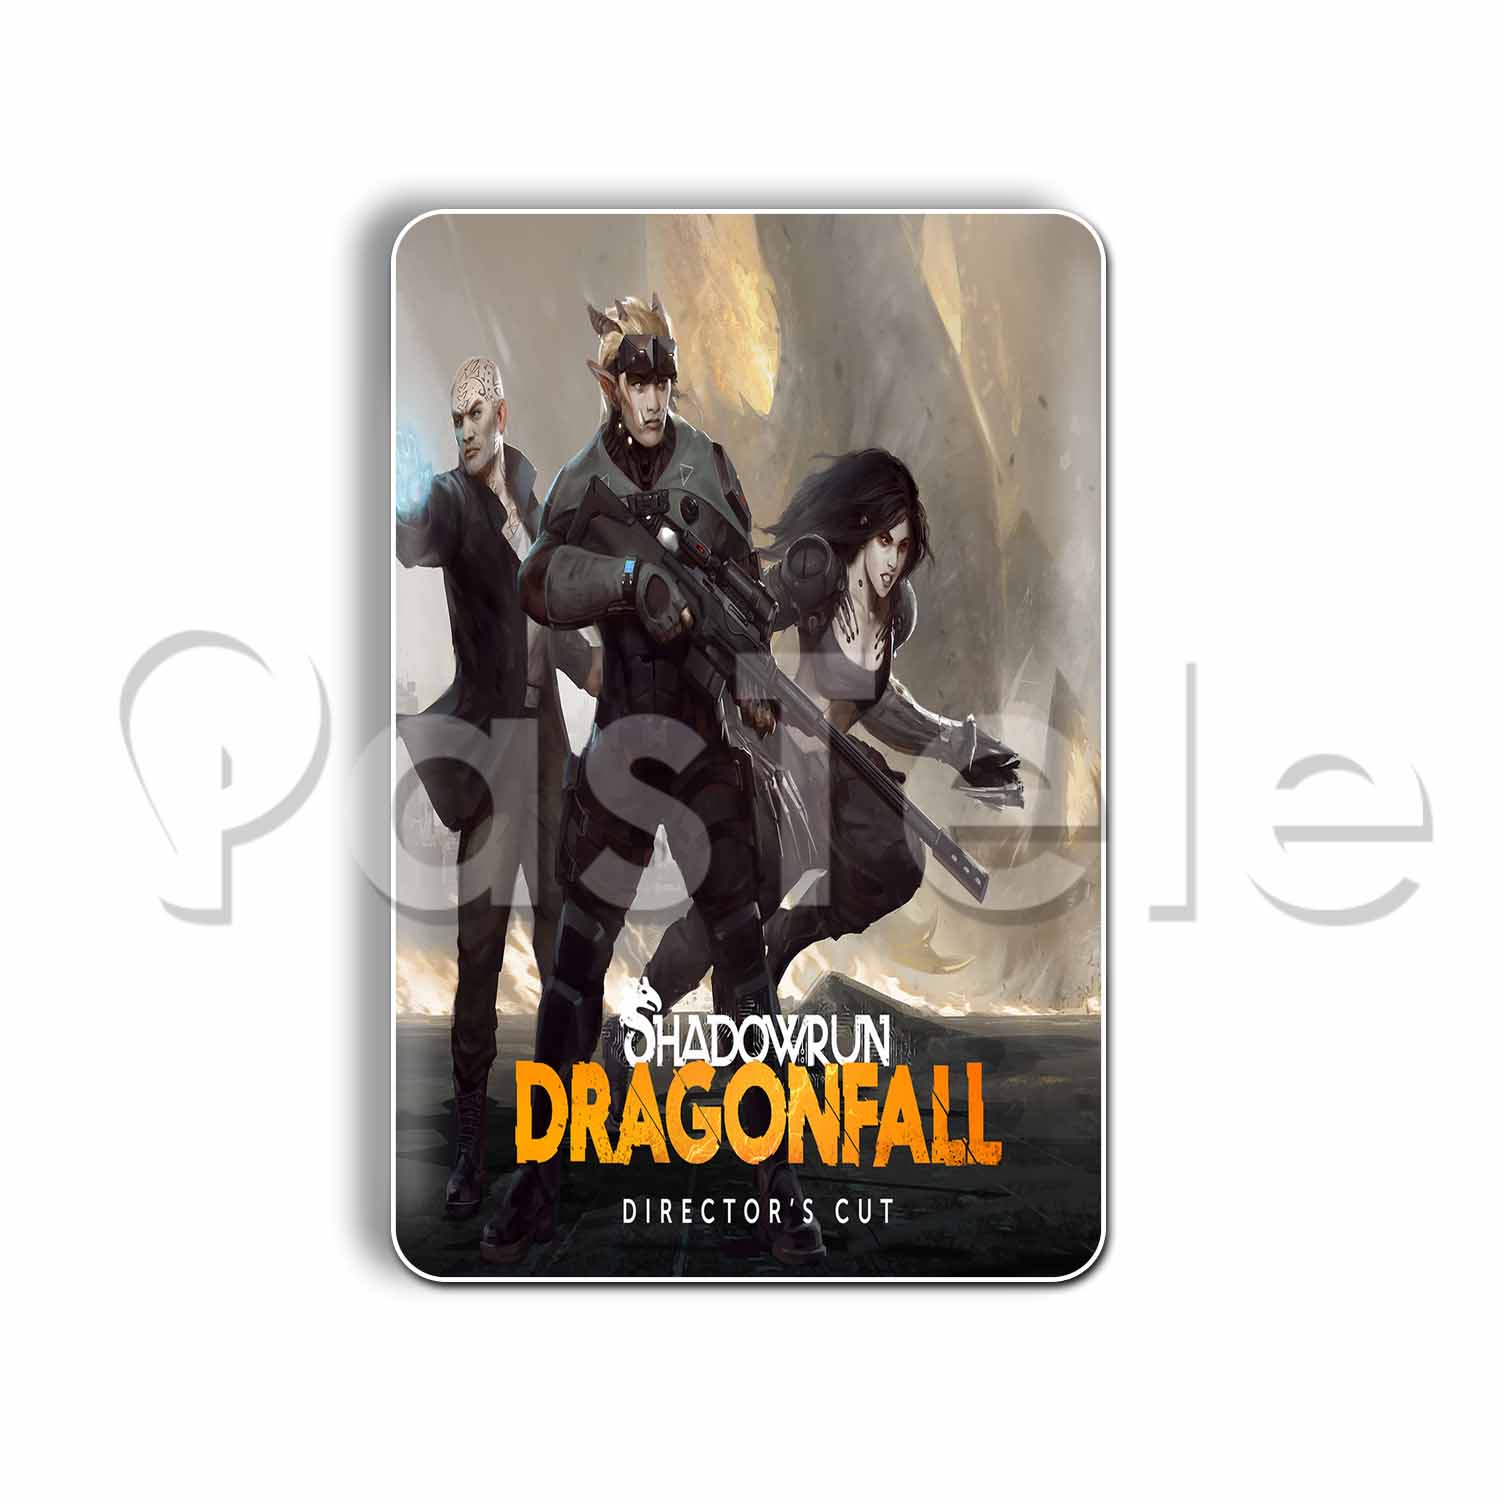 Shadowrun: Dragonfall - Director's Cut